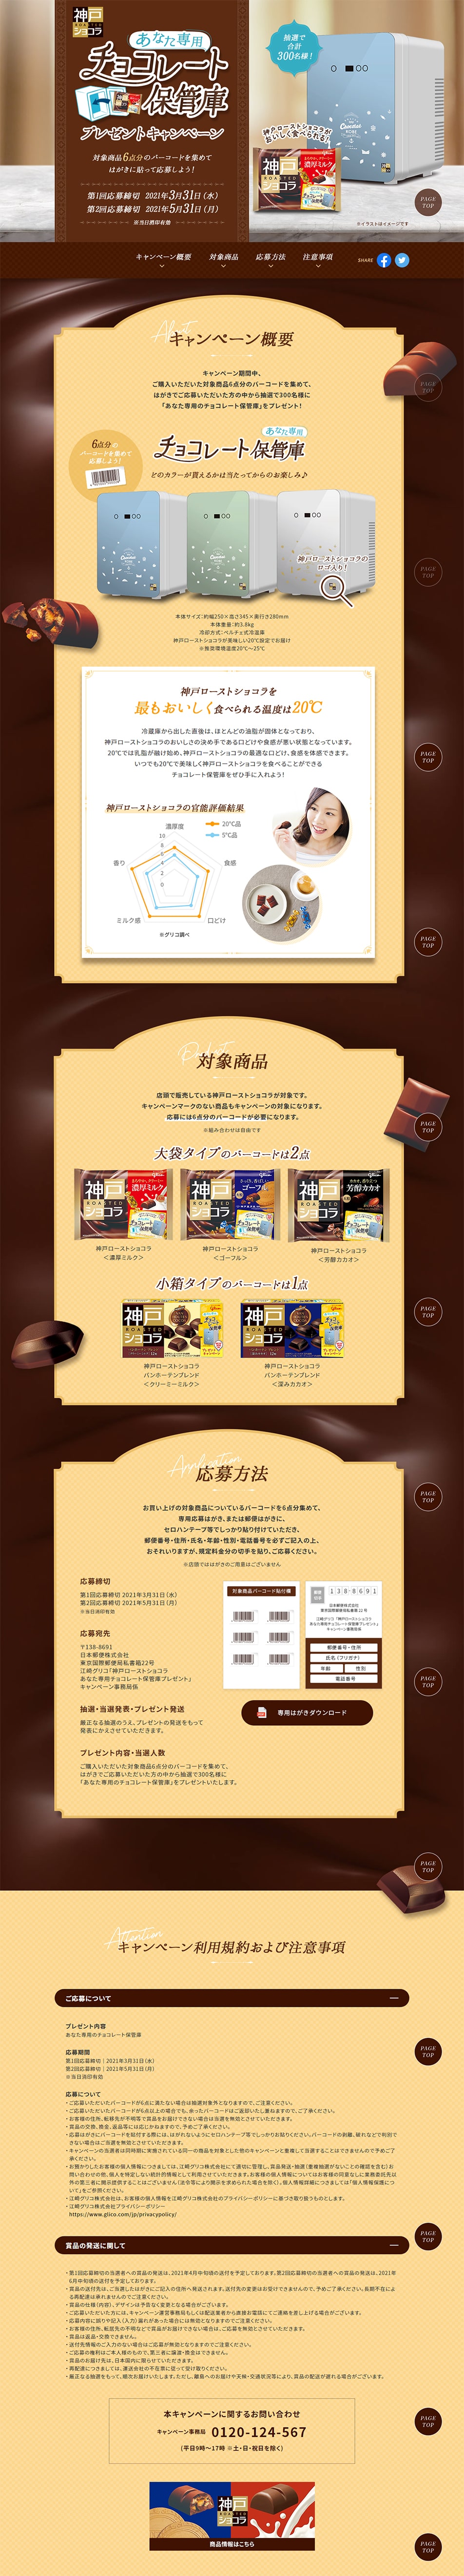 神戸ローストショコラ チョコレート保管庫プレゼントキャンペーン_pc_1